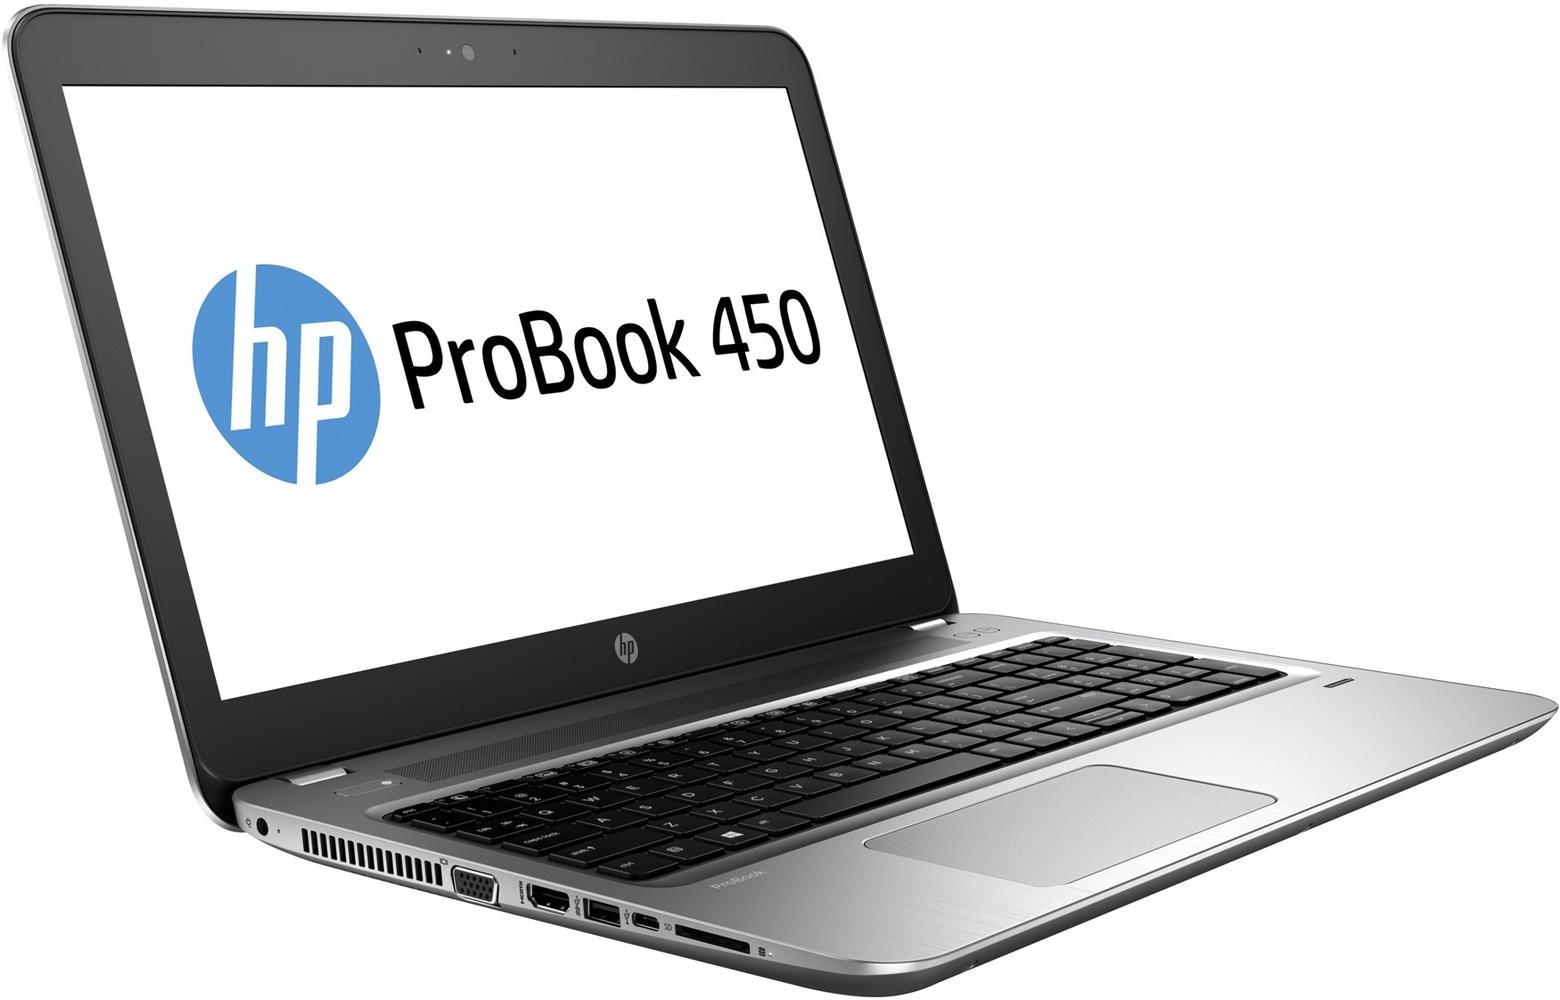   HP Probook 450 G4 (Y8A60EA)  1